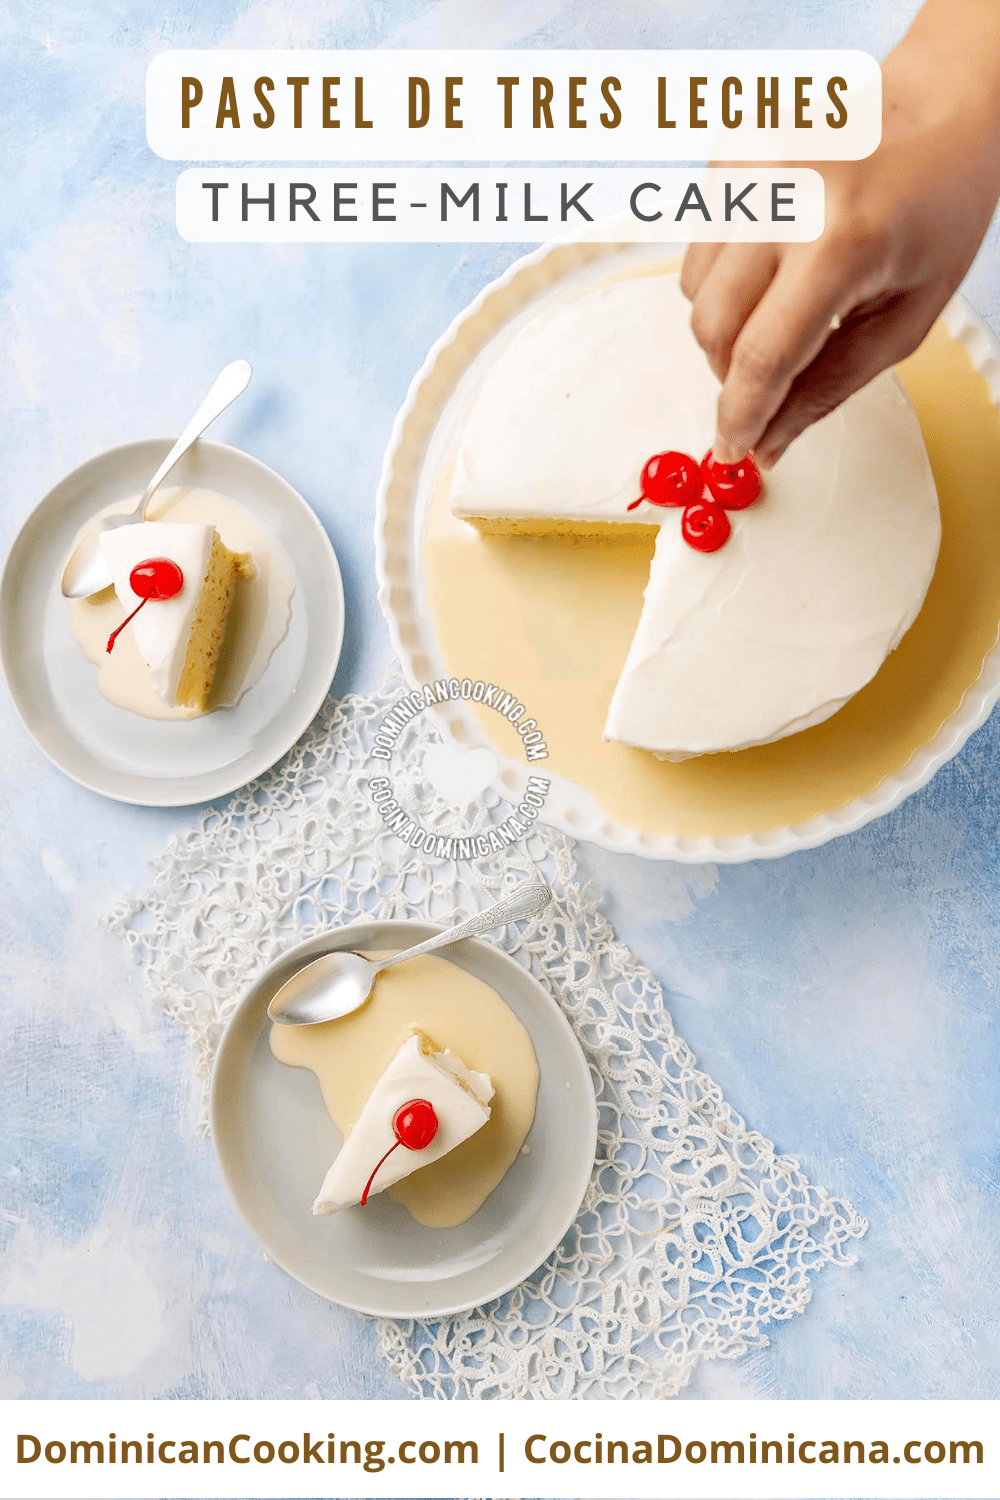 Pastel tres leches (three-milk cake) recipe.